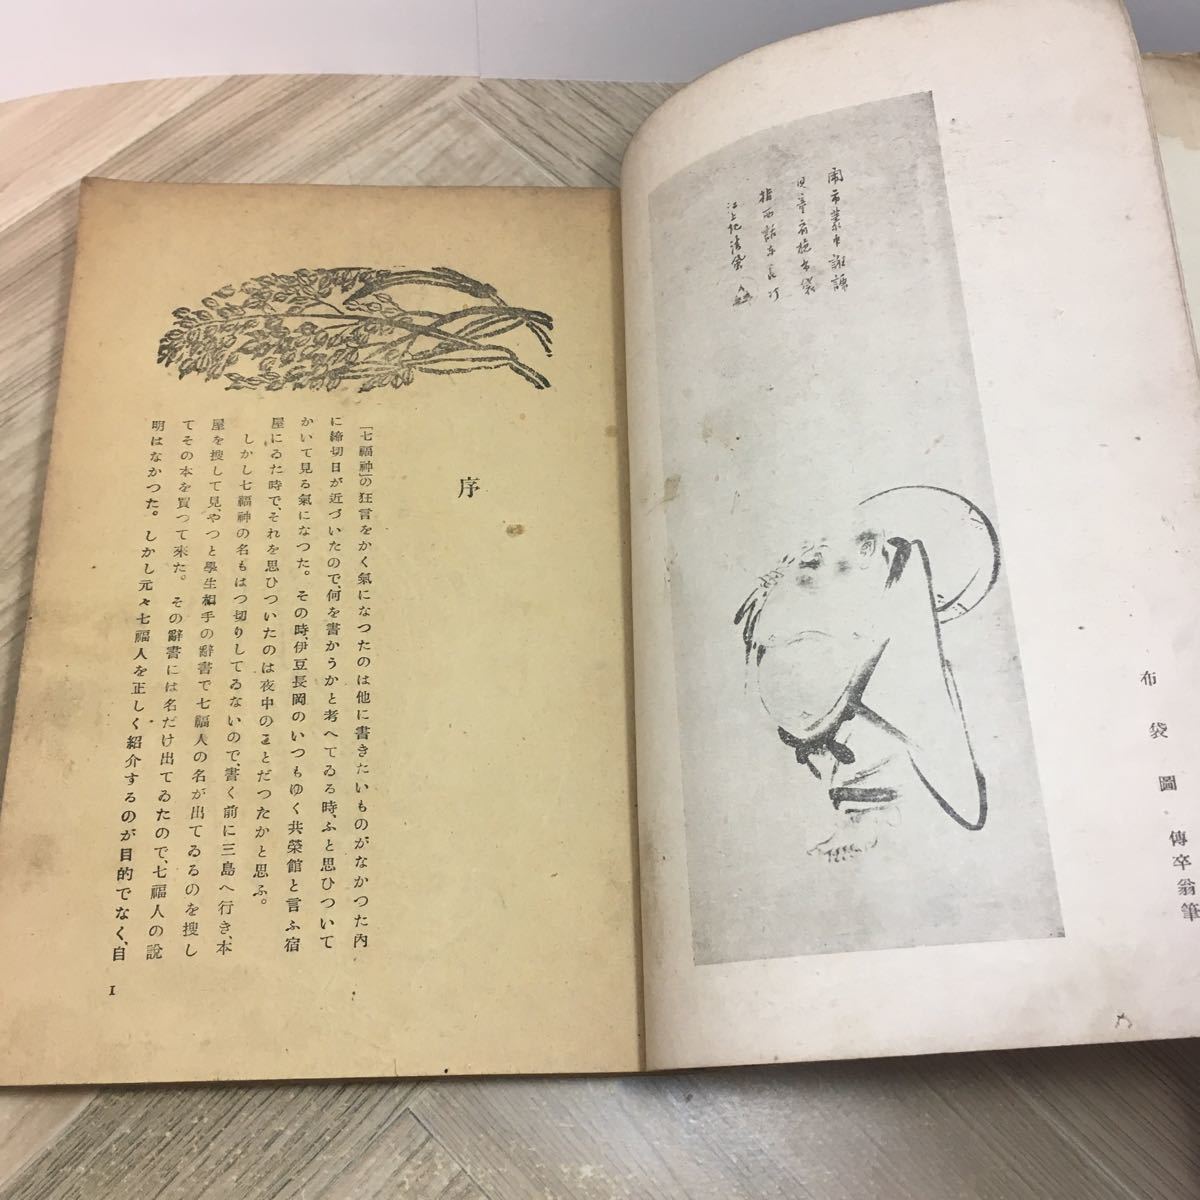 112r* старинная книга Mushakoji Saneatsu kyogen . название . семь божеств удачи строительство фирма Showa 18 год 